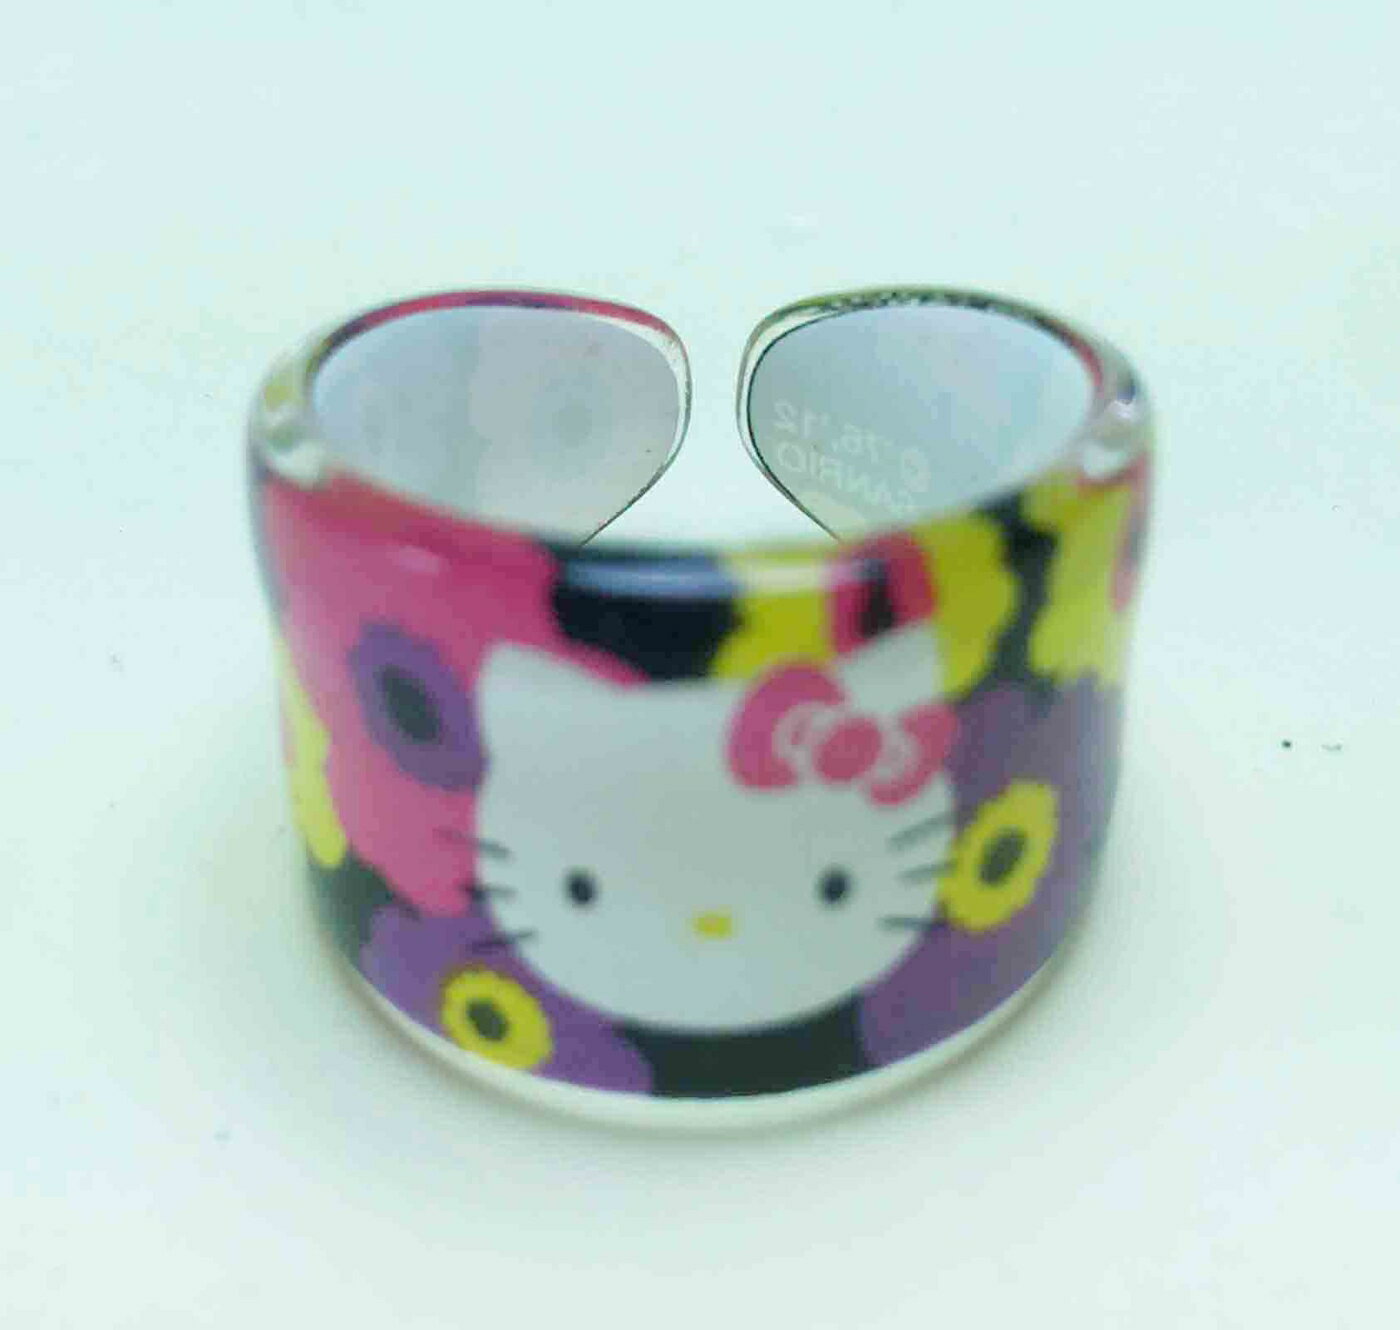 【震撼精品百貨】Hello Kitty 凱蒂貓 塑膠戒指-黑 震撼日式精品百貨